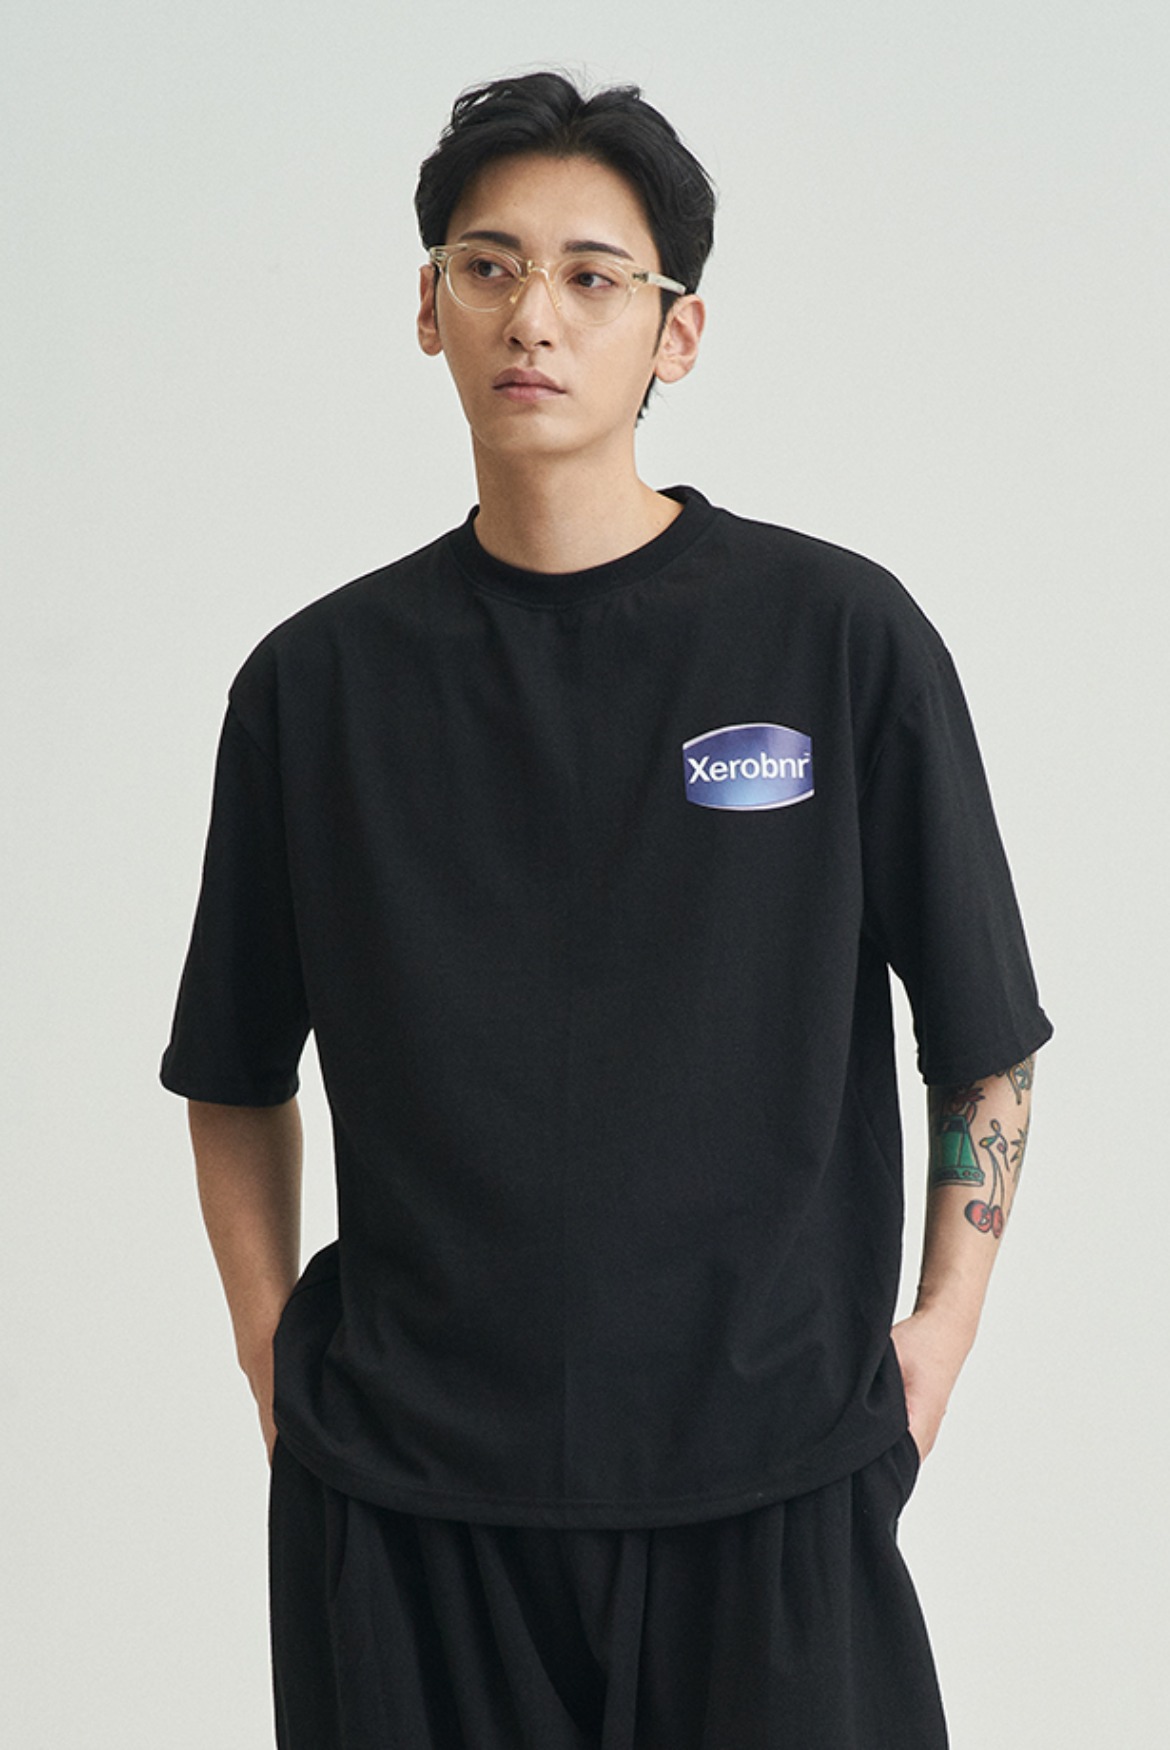 Xerobnr Lotion T-Shirts [Black]